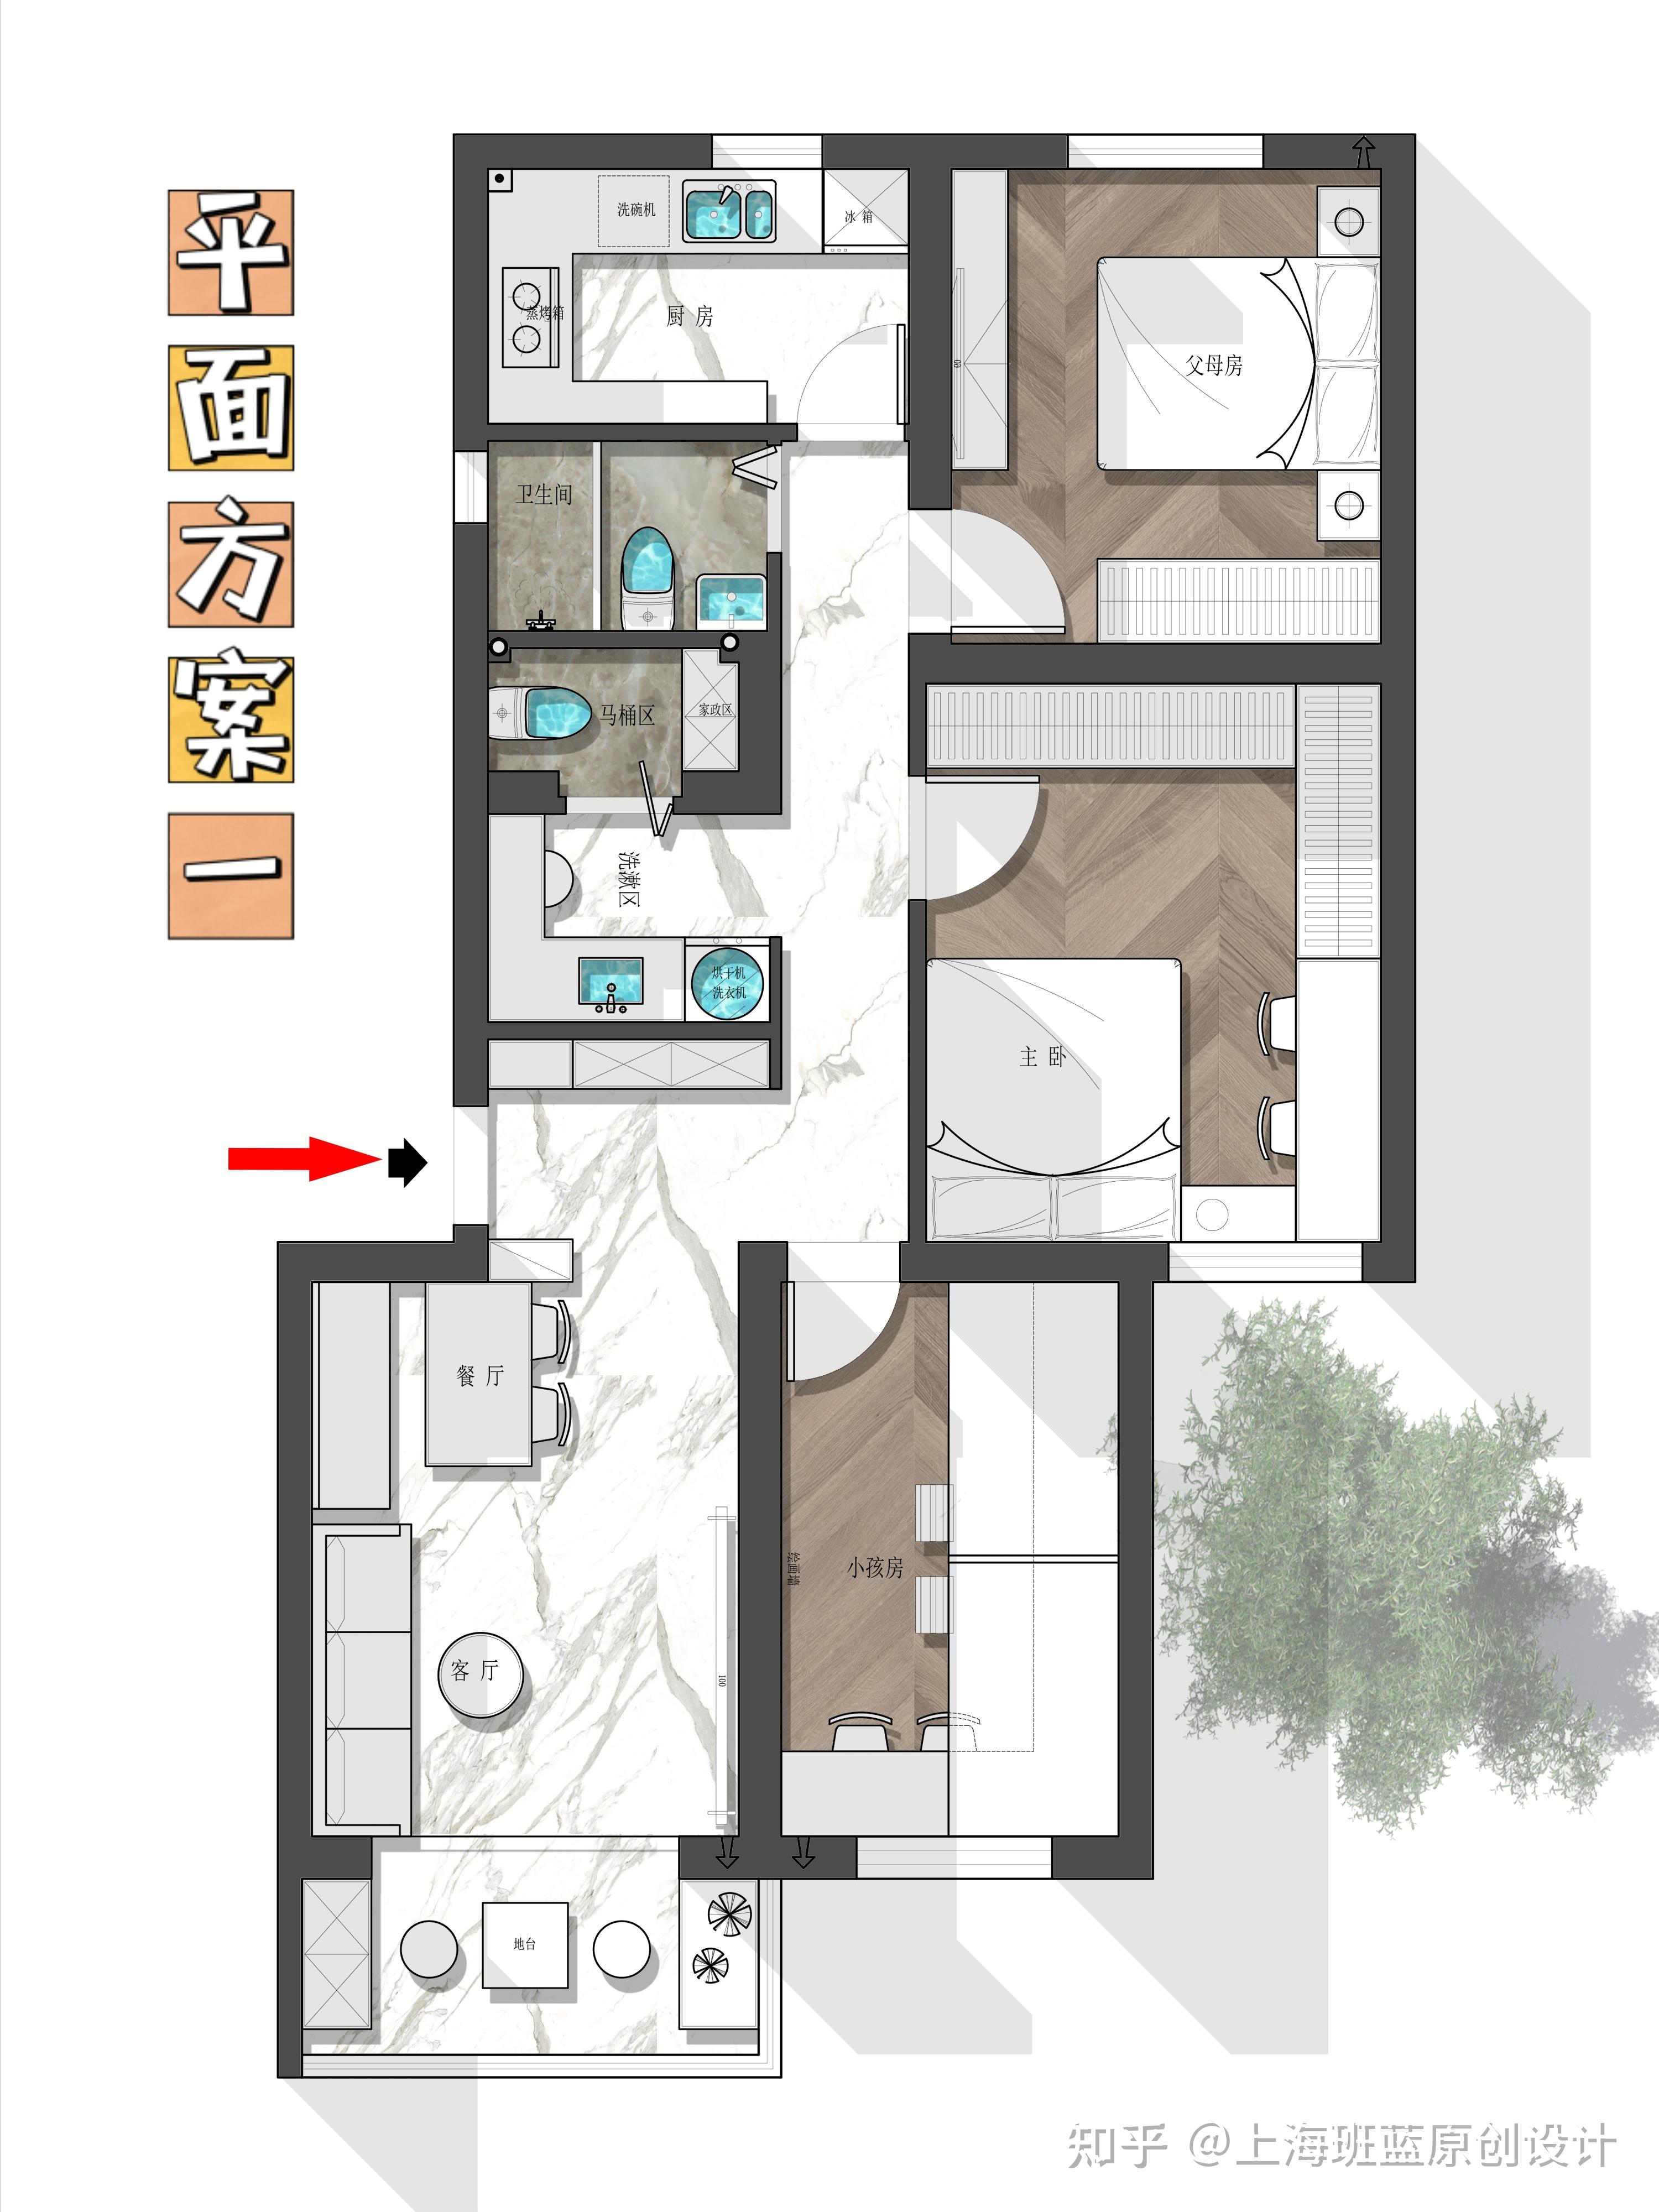 蓝光乐彩城B1'71㎡三房两厅一卫户型图,3室2厅1卫70.84平米- 成都透明房产网